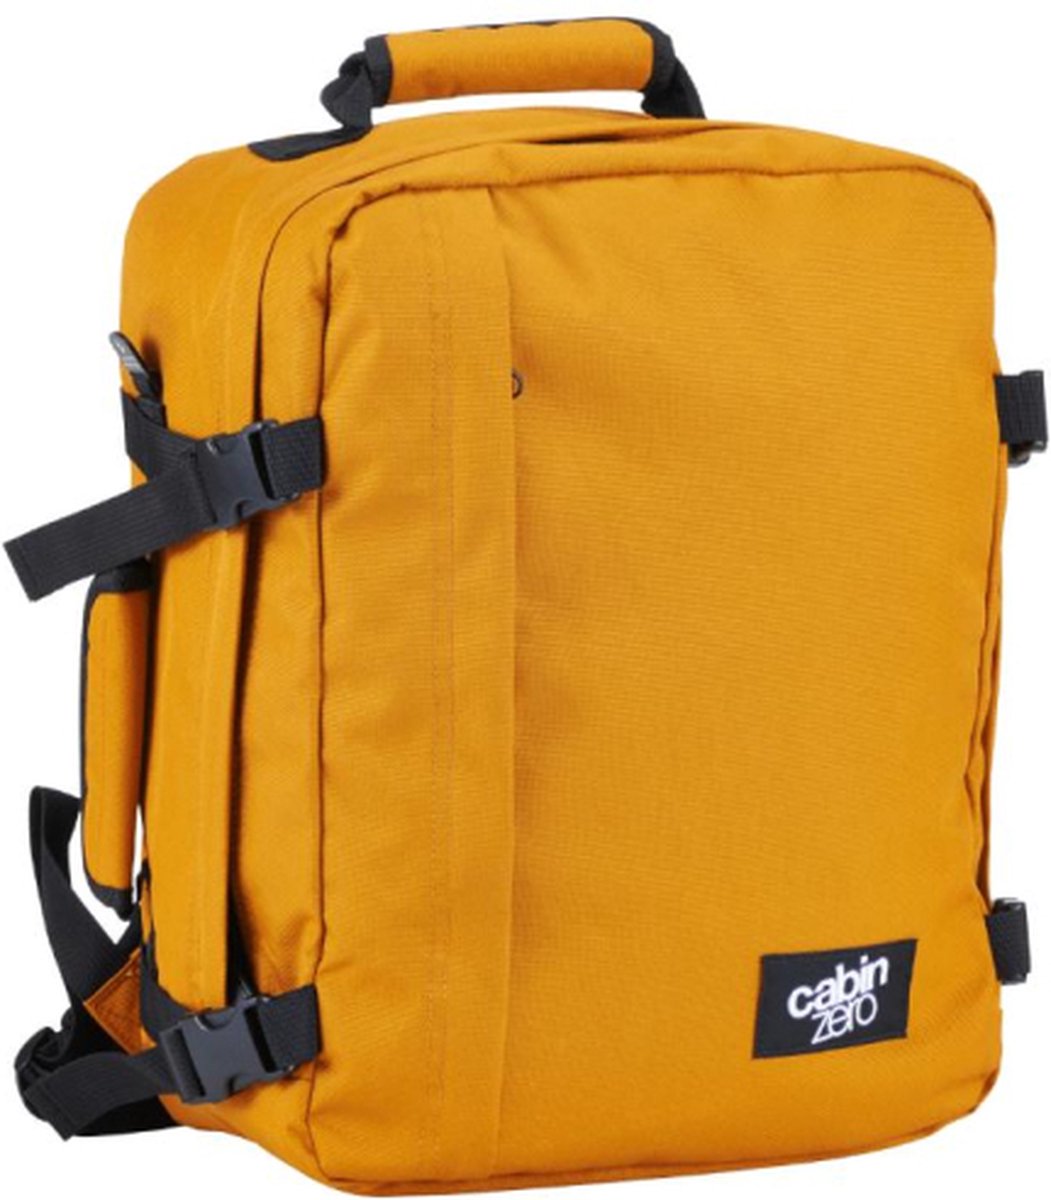 Cabinzero Mini bagage à main Sac à dos cabine ultra-léger Orange Chill  Wizair | bol.com